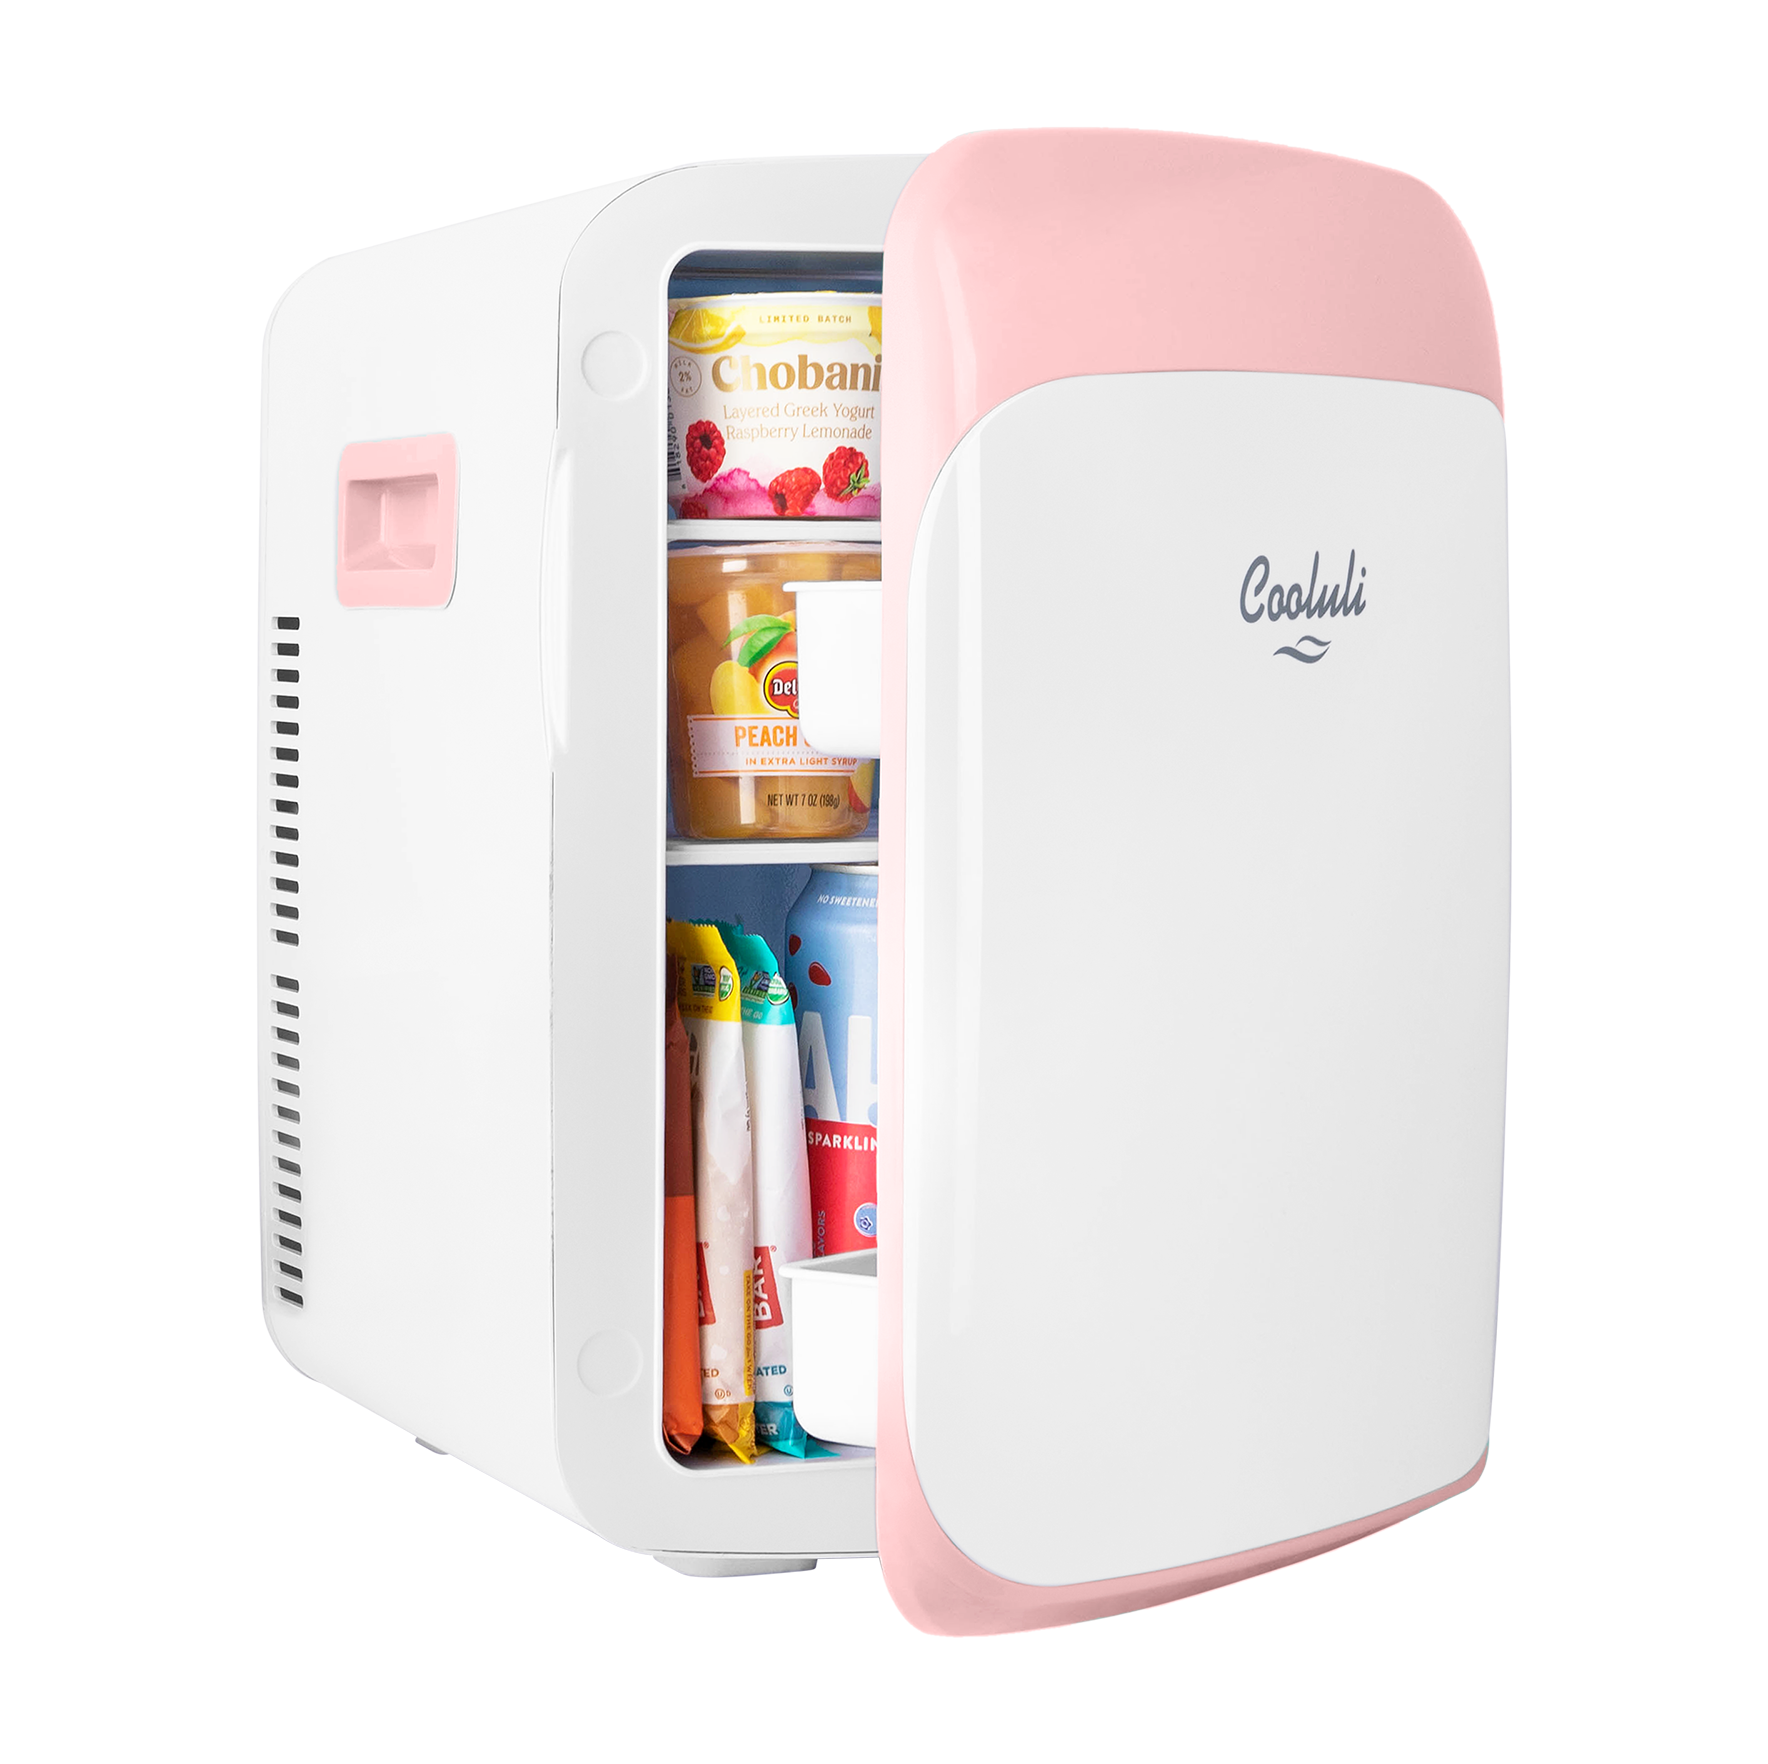 cooluli classic 15 liter pink portable skincare mini fridge